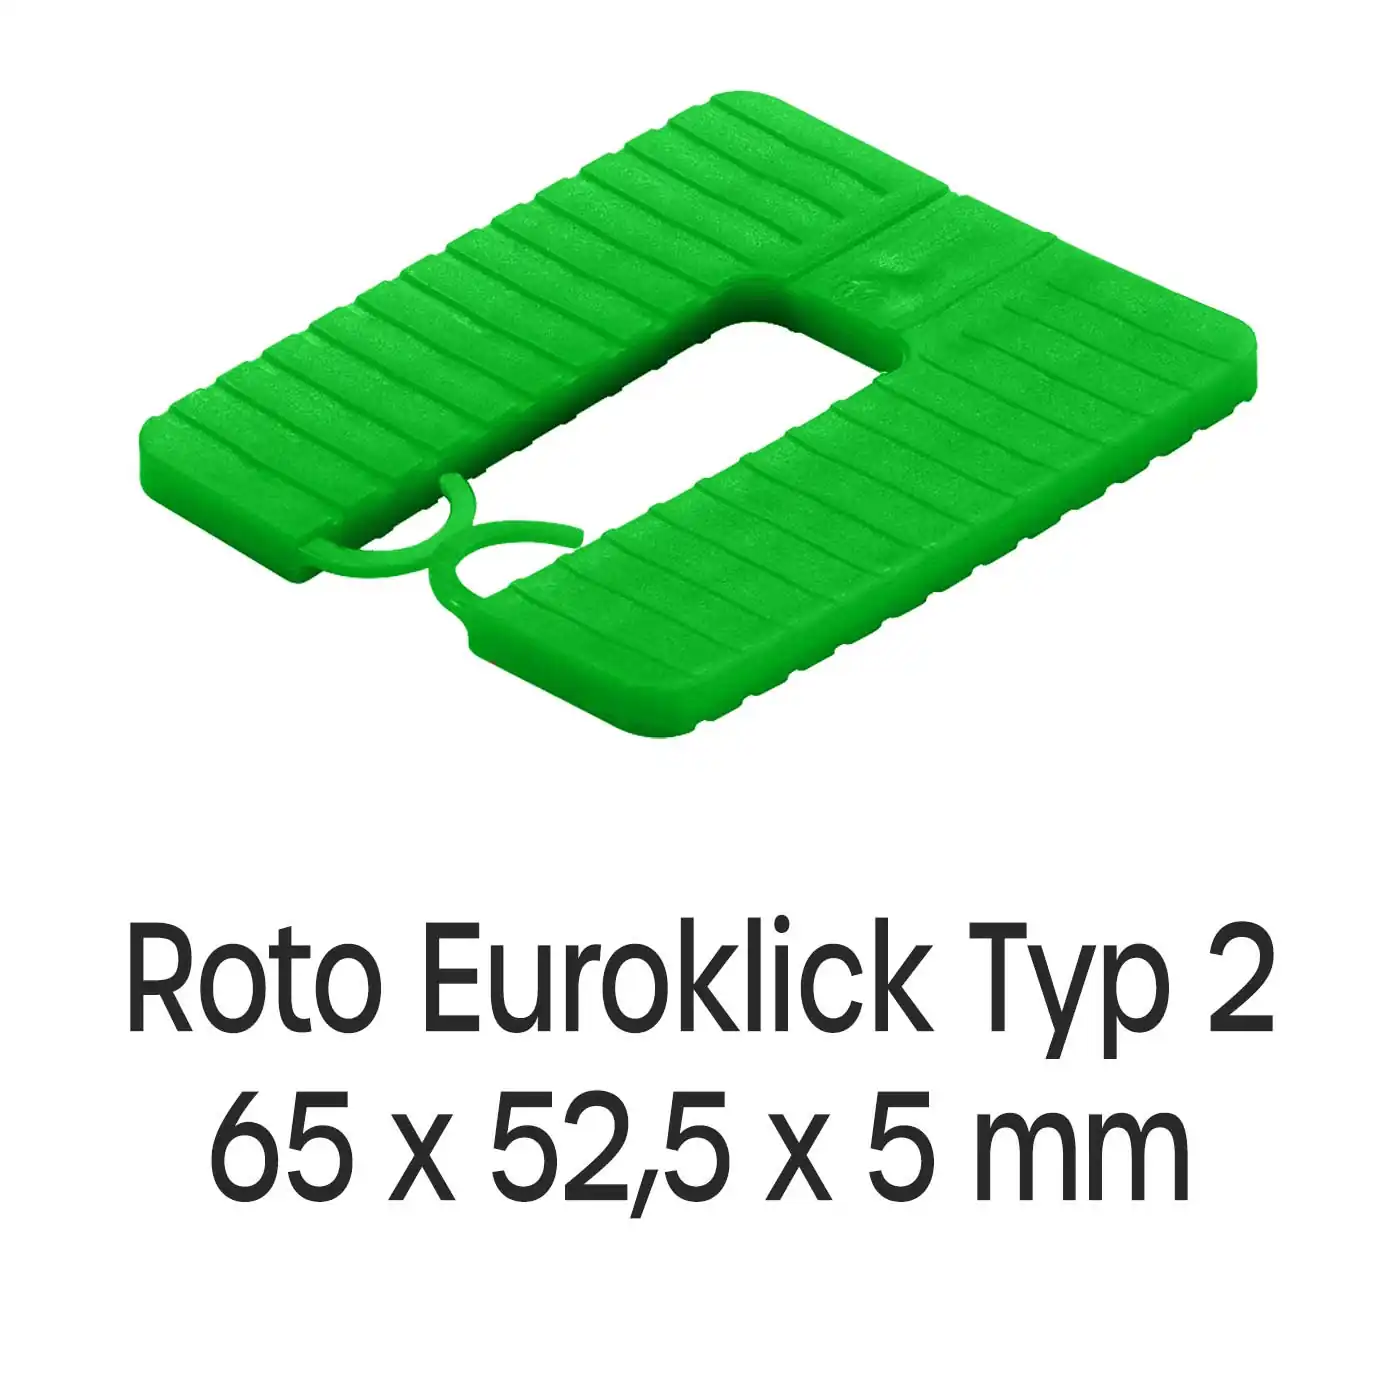 Distanzplatten Roto Euroklick Typ 2 65 x 52,5 x 5 mm 500 Stück